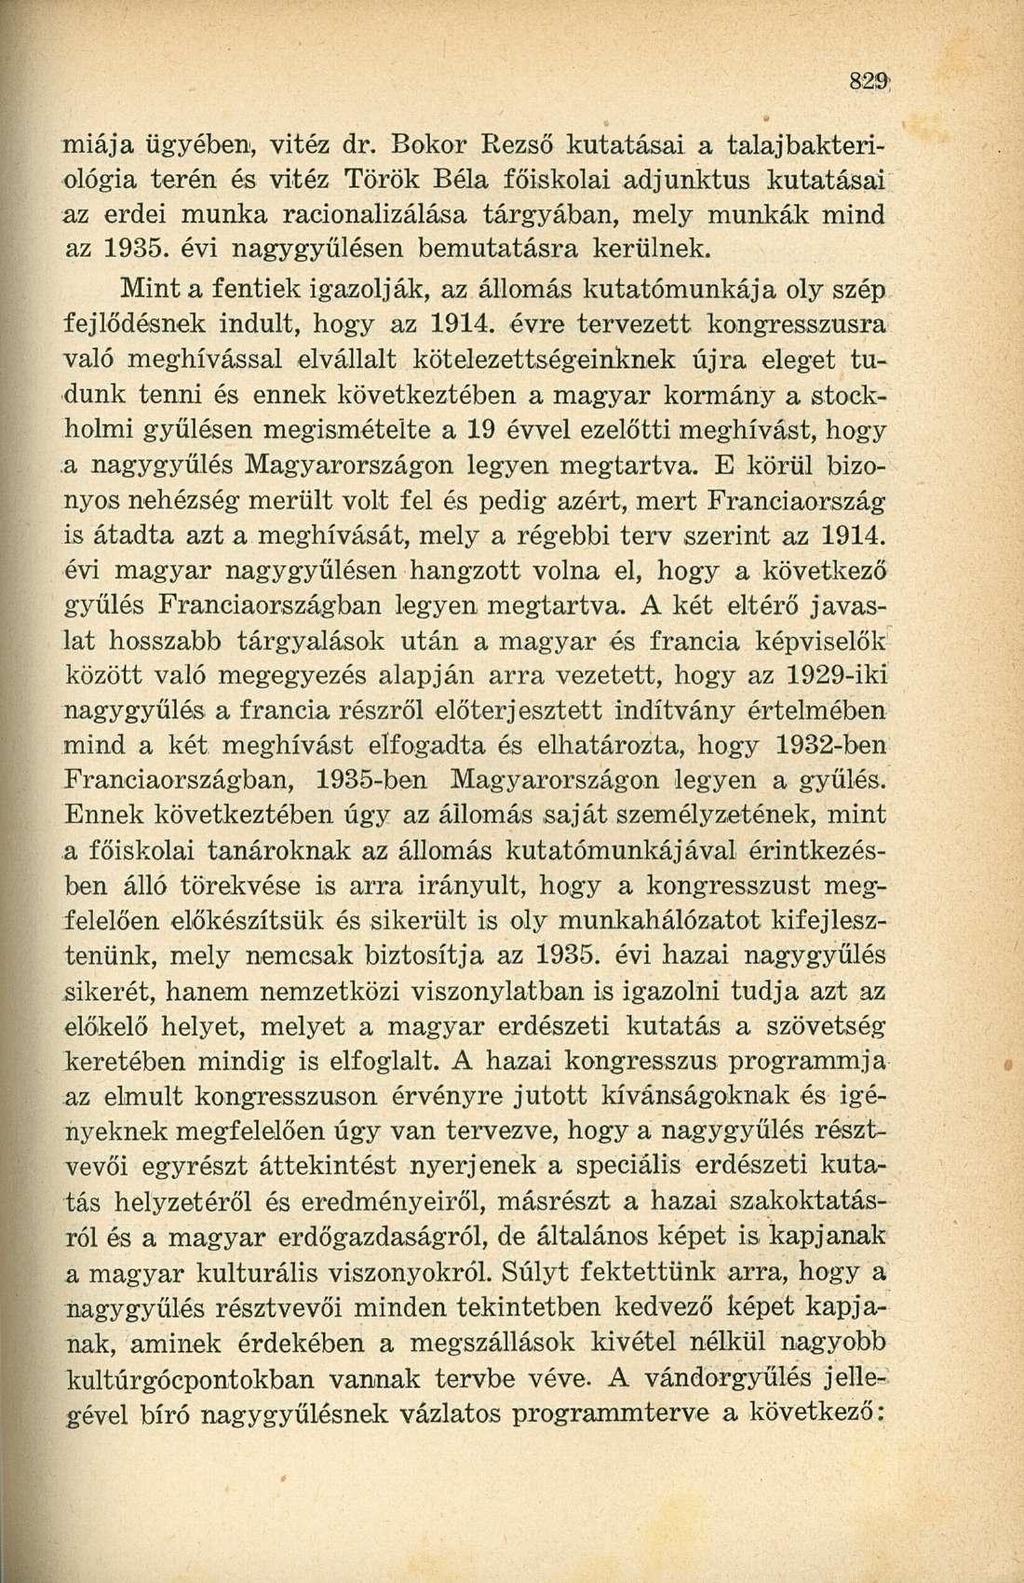 miája ügyében, vitéz dr. Bokor Rezső kutatásai a talajbakteriológia terén és vitéz Török Béla főiskolai adjunktus kutatásai az erdei munka racionalizálása tárgyában, mely munkák mind az 1935.